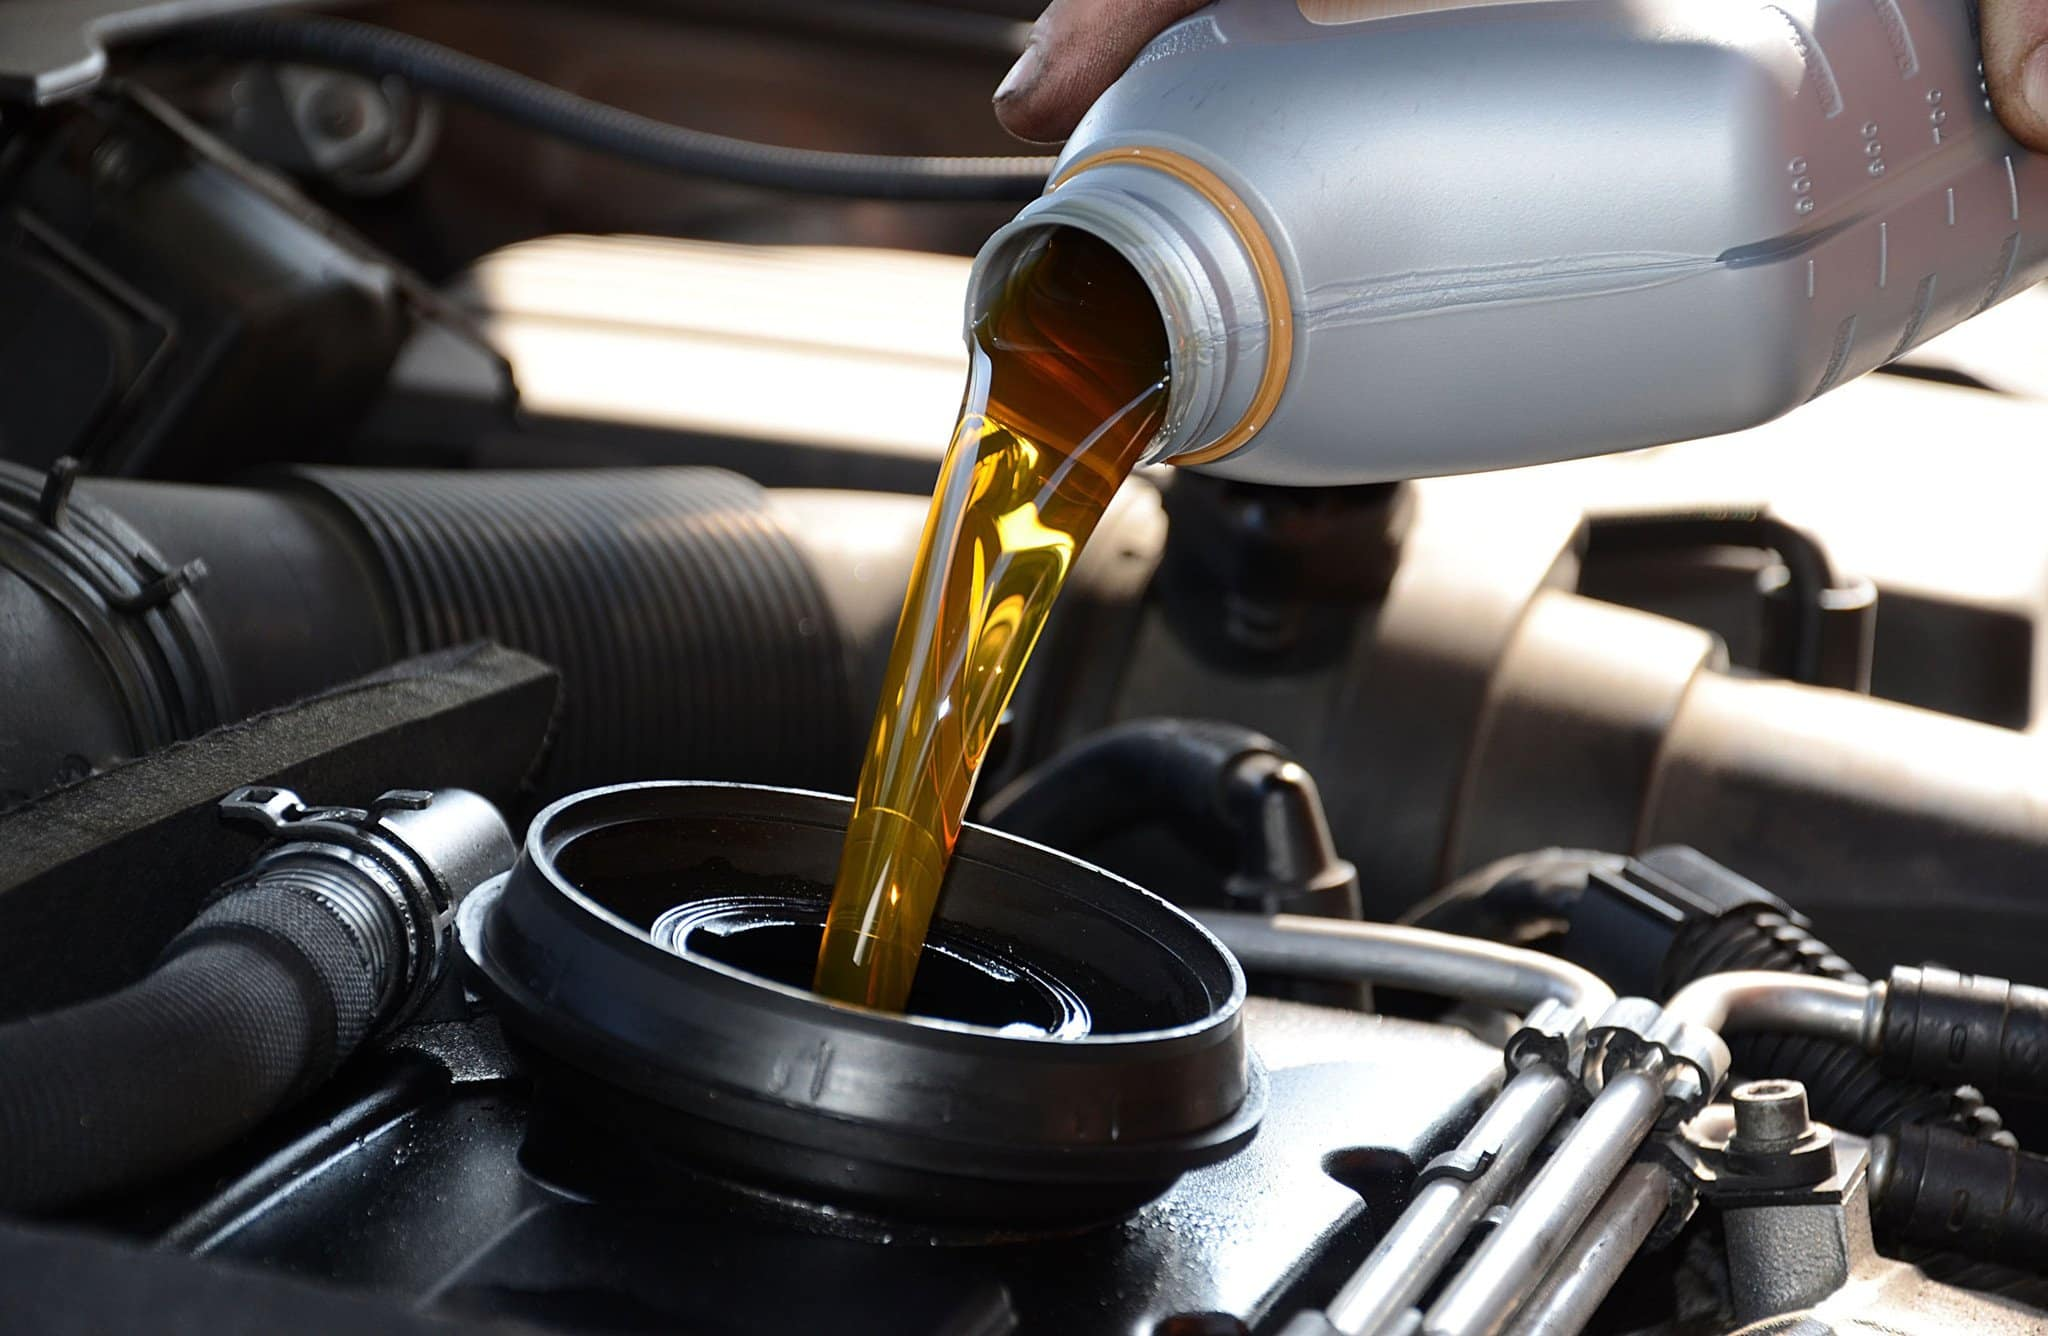 ¿Cómo puedo saber cuántos litros de aceite lleva un carro?